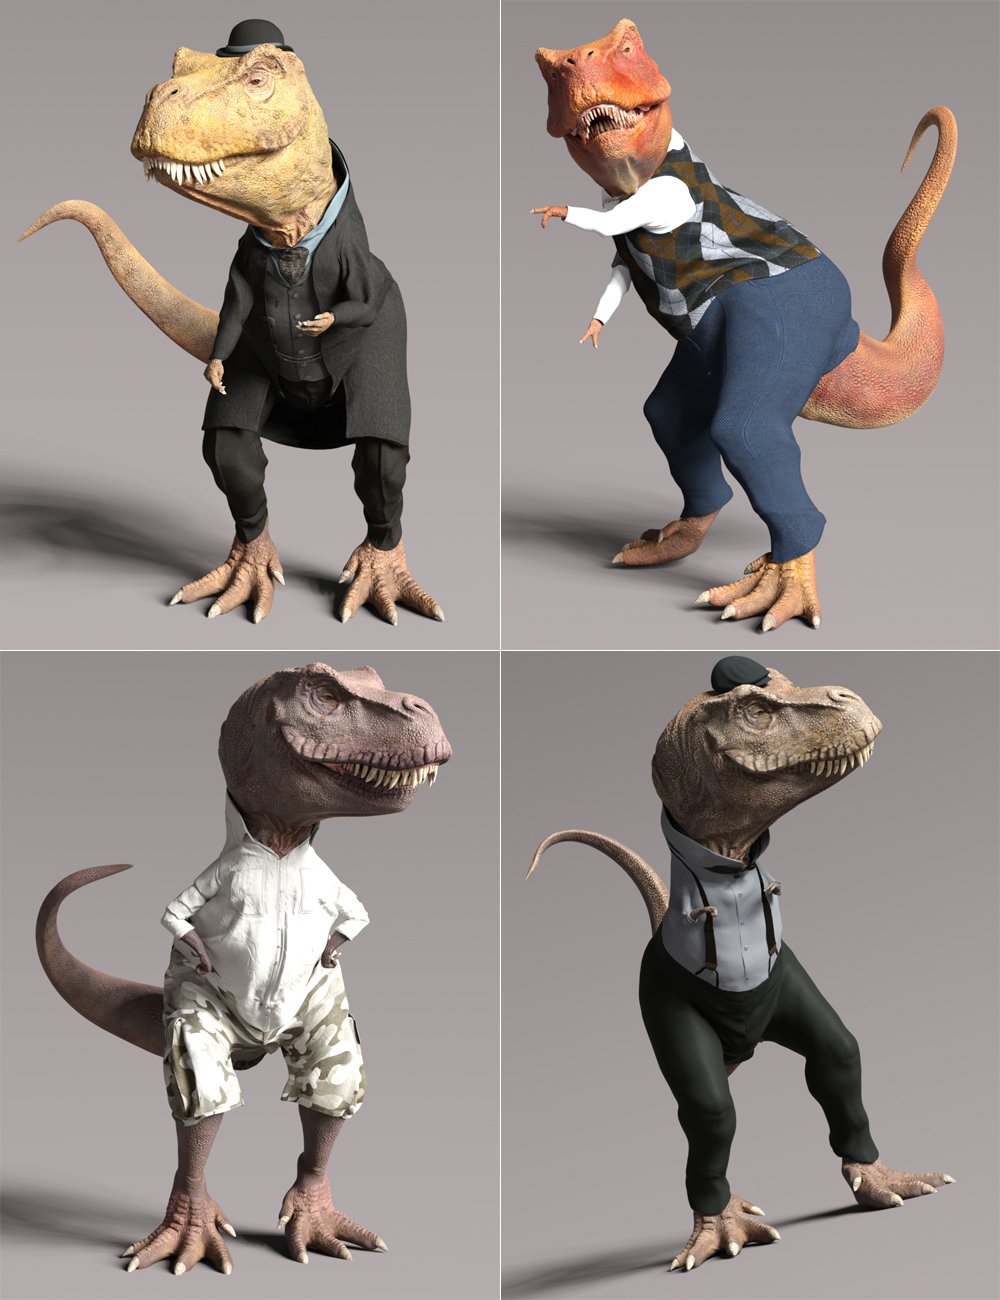 Rex HD for Genesis 8.1 Male by: JoeQuick, 3D Models by Daz 3D